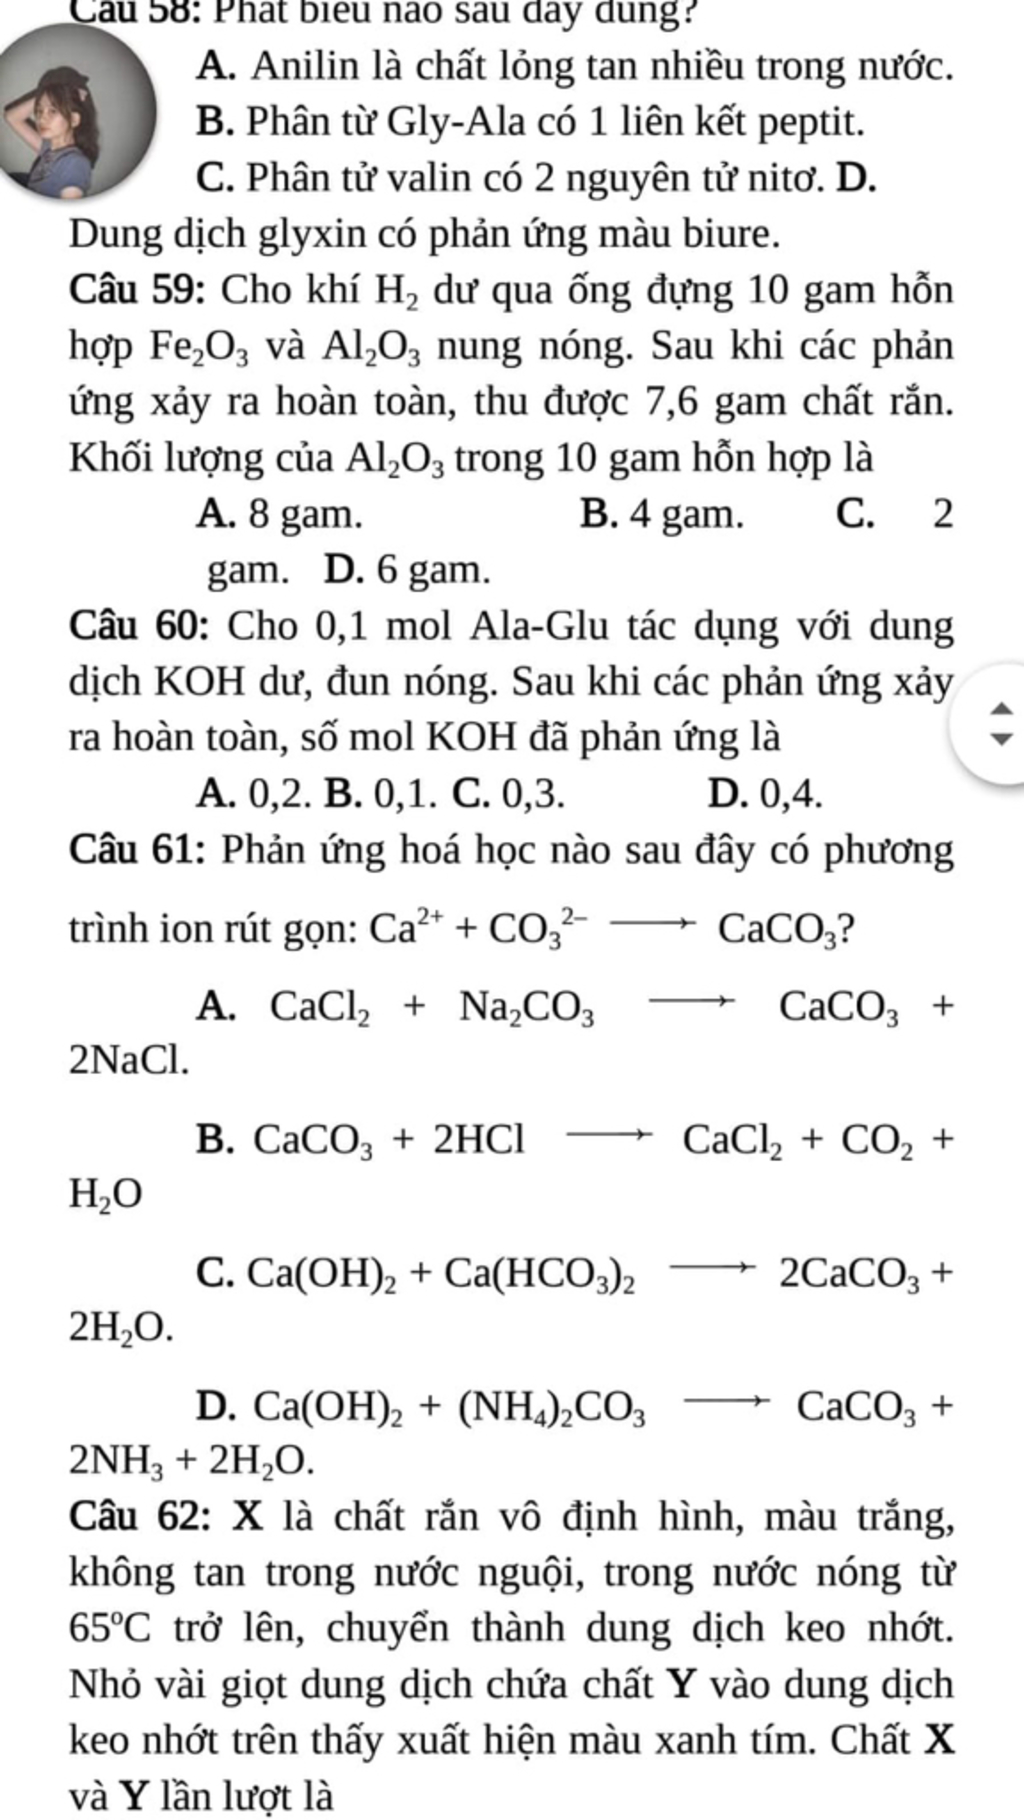 Bạn có biết câu 58 đó là gì không? Đừng bỏ lỡ cơ hội để học về Anilin, một chất lỏng tan trong đề thi Hóa học. Hoc360.net sẽ giúp bạn hiểu rõ hơn về nó với bài giảng hữu ích và dễ hiểu.